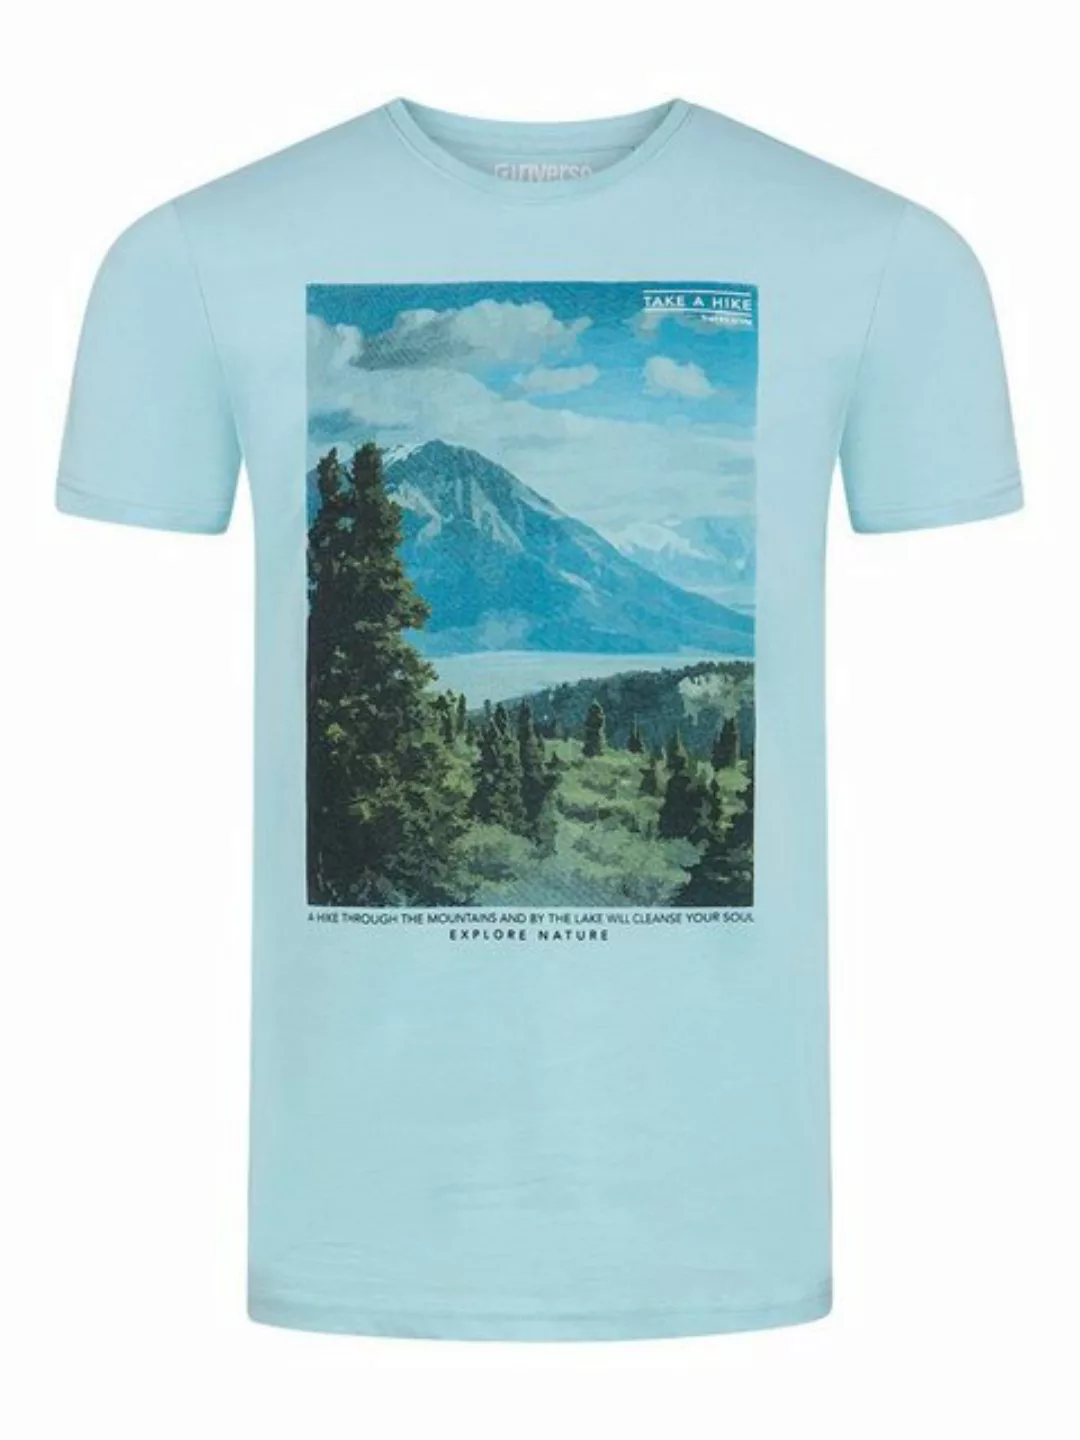 riverso Herren Rundhals T-Shirt RIVLukas Regular Fit günstig online kaufen